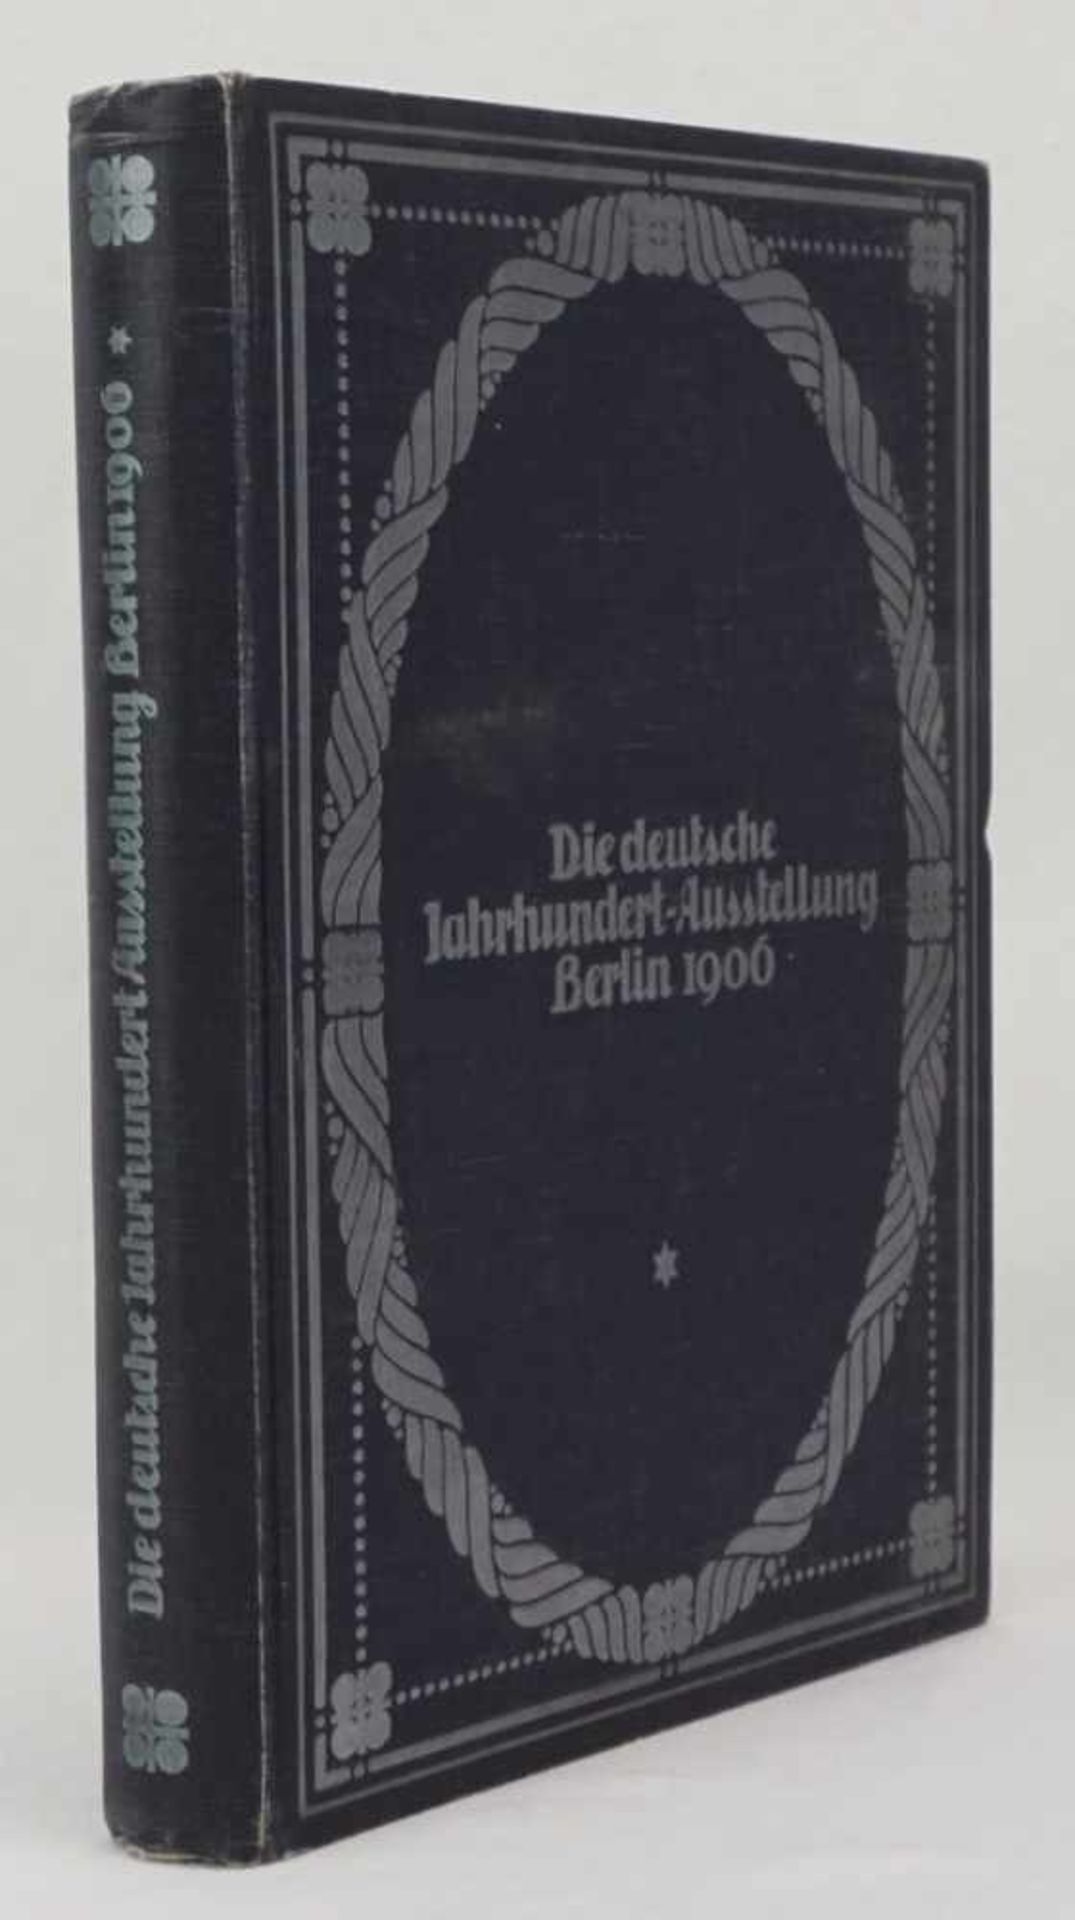 Hugo von Tschudi, "Die deutsche Jahrhundert-Ausstellung Berlin 1906" - Bild 2 aus 5